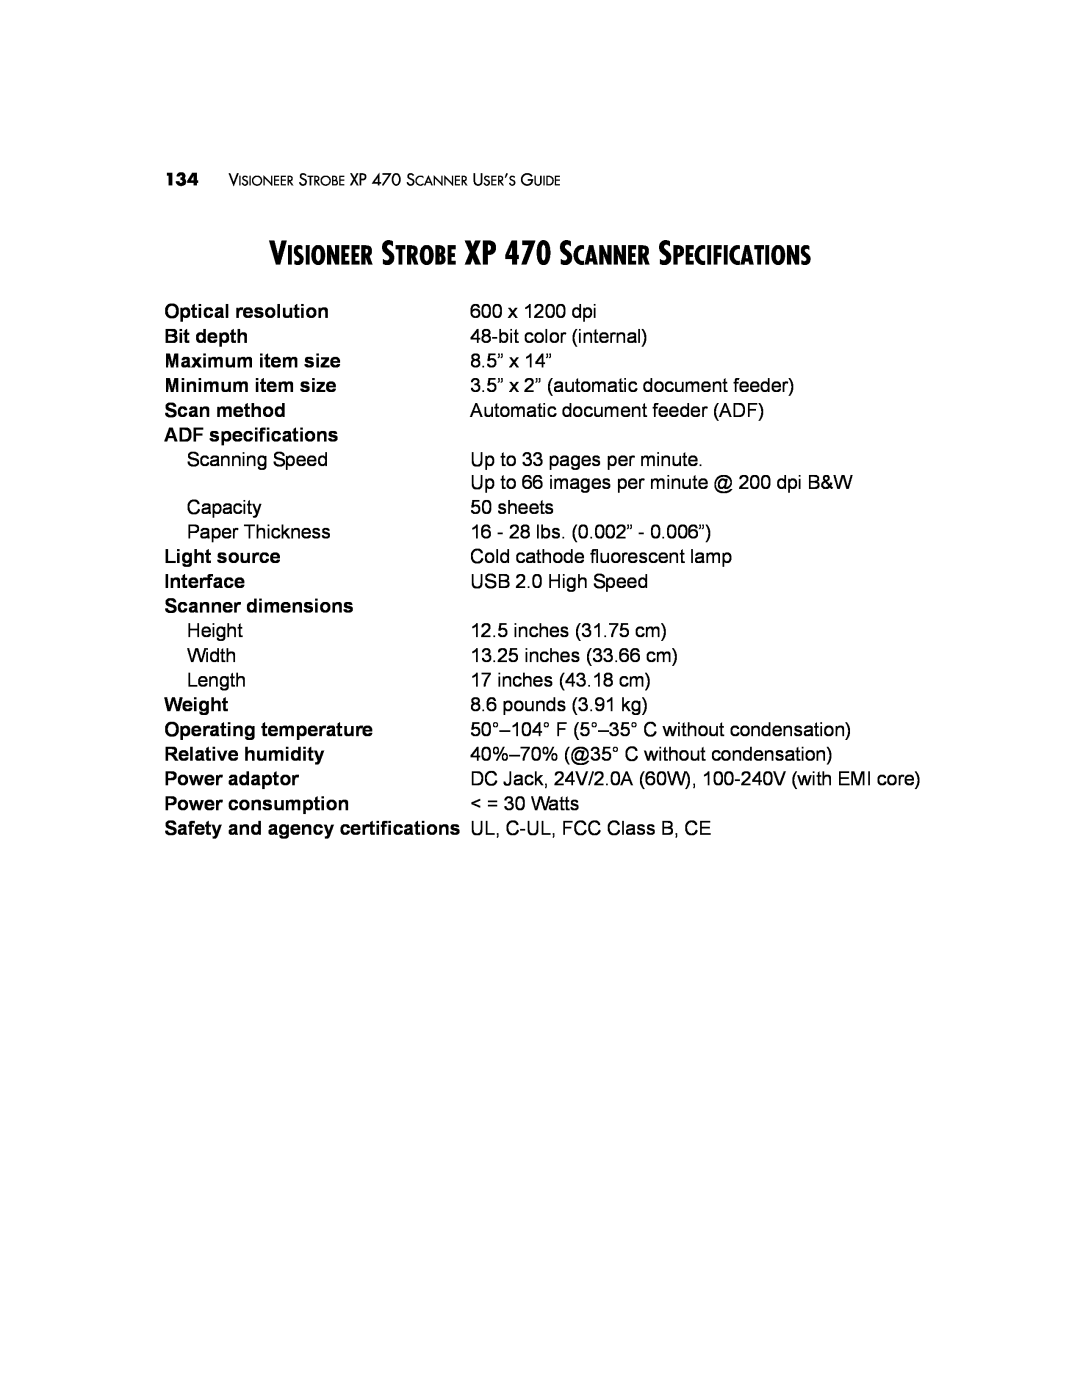 Visioneer manual VISIONEER STROBE XP 470 SCANNER SPECIFICATIONS 